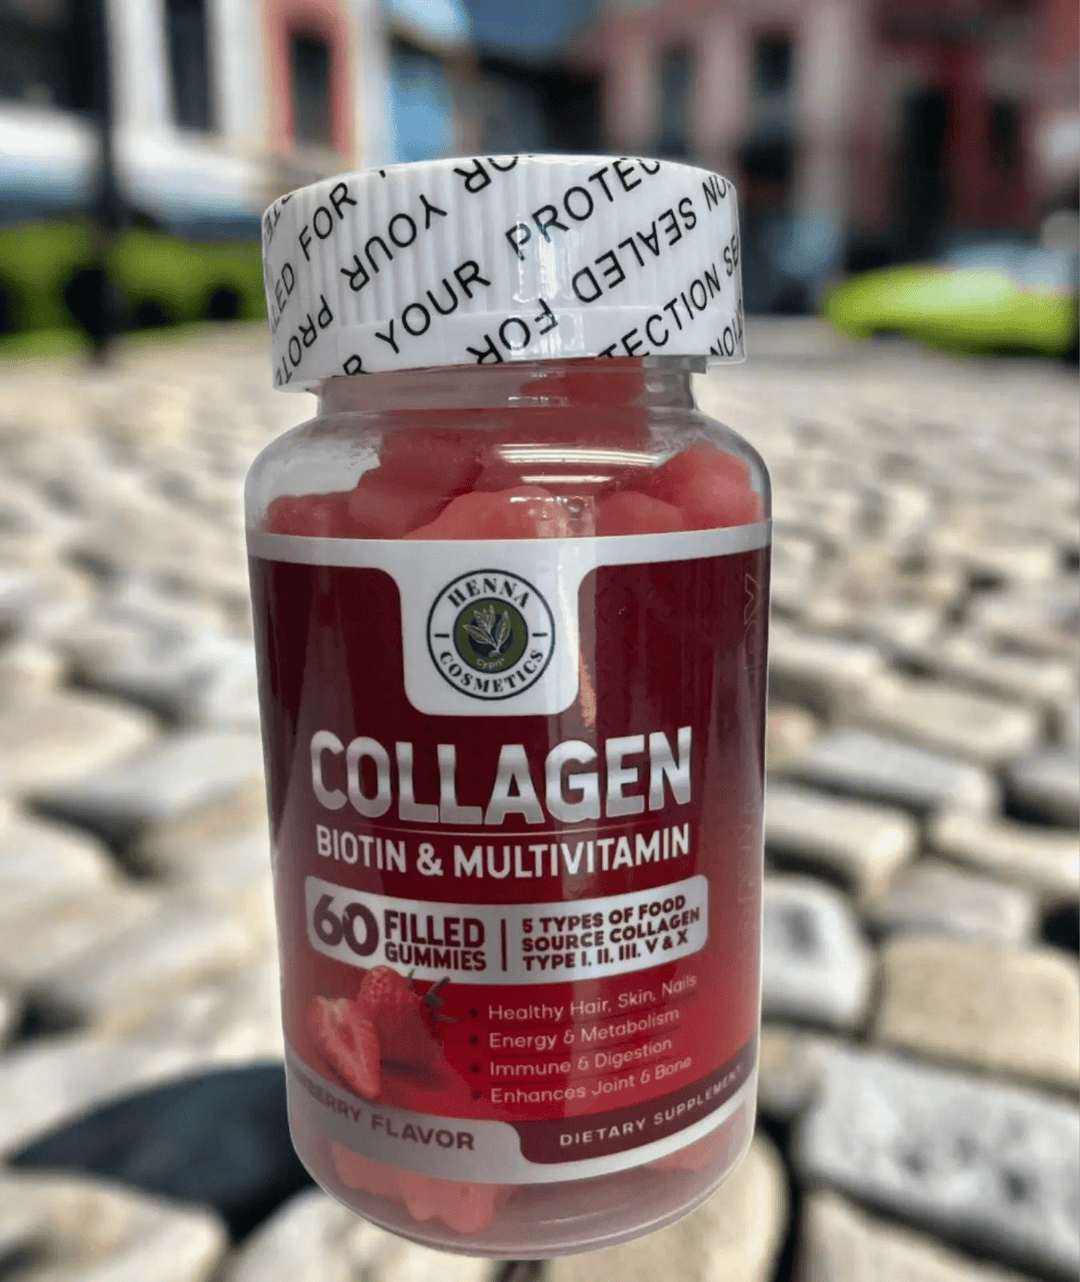 Collagen Biotin & Multivitamin For Hair and Skin|60 Gummies| Henna Cosmetics